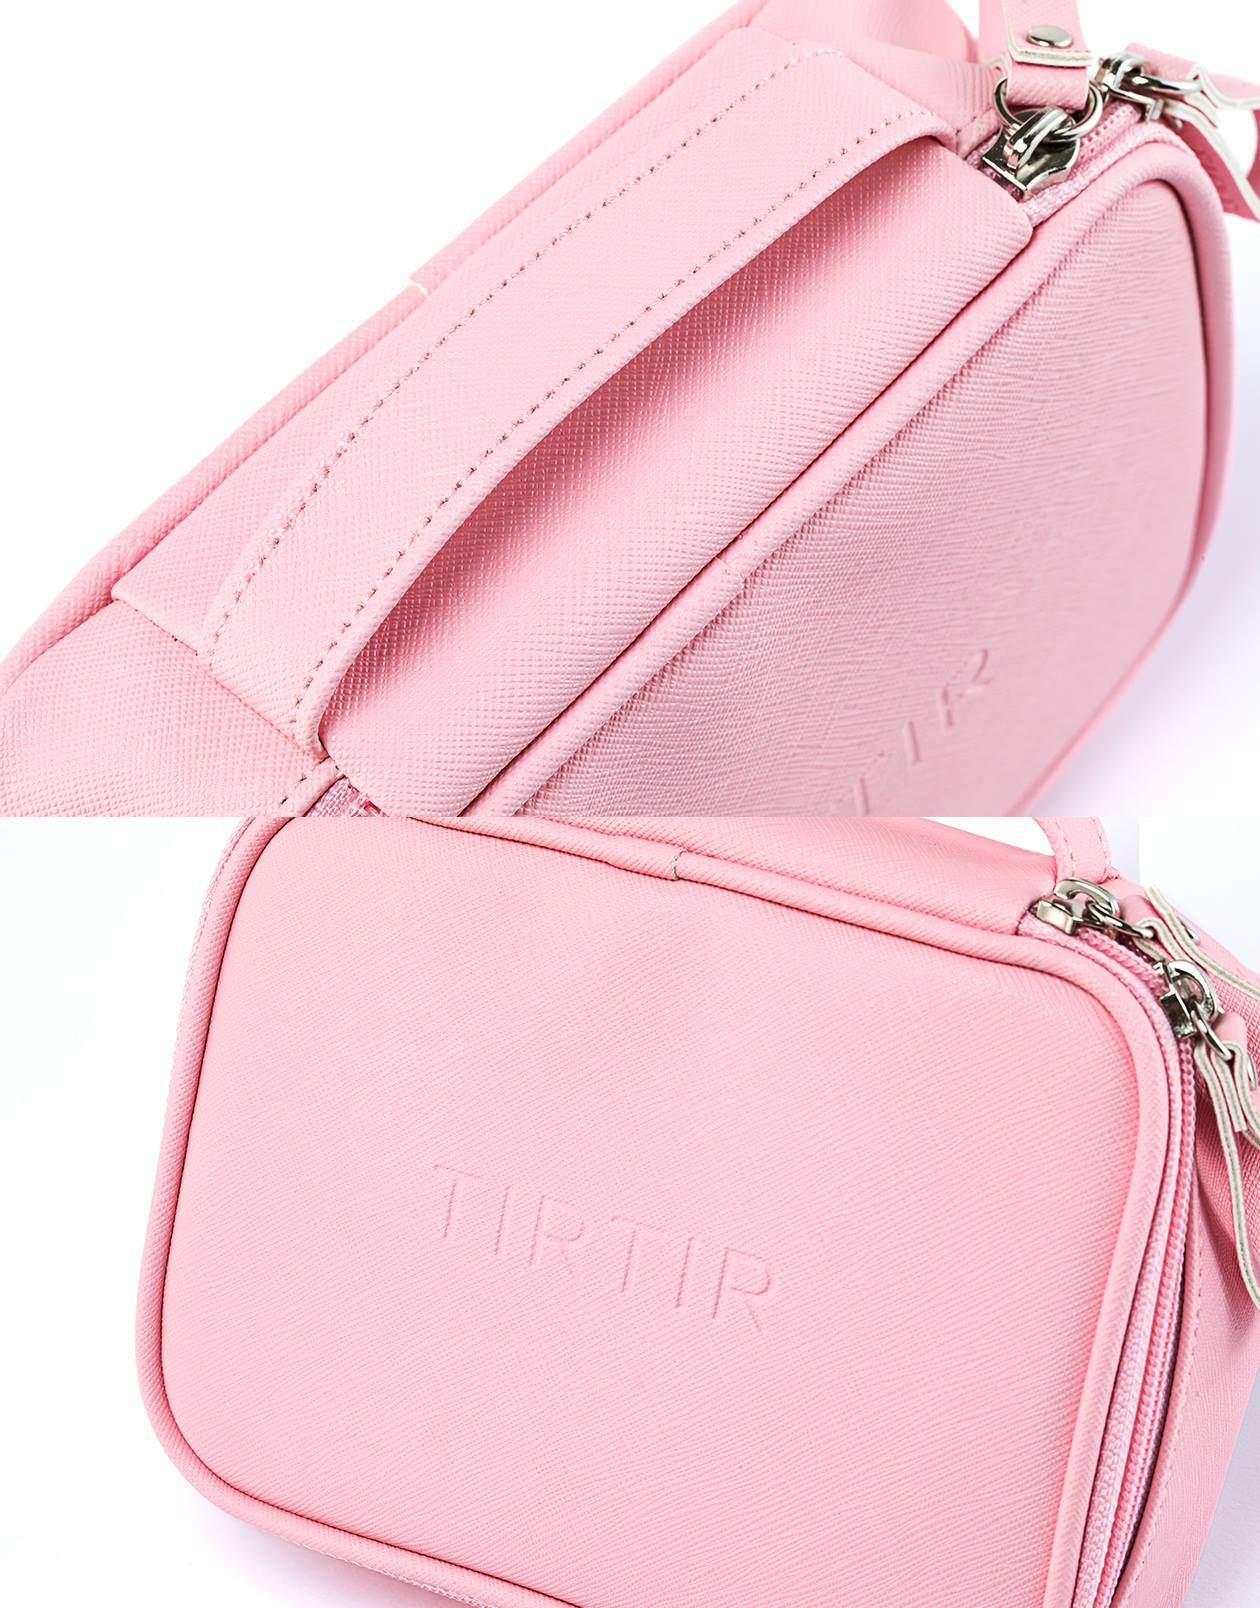 TIRTIR Play Pink Pouches Zipper Makeup Beauty Bags Womens Travel Trip